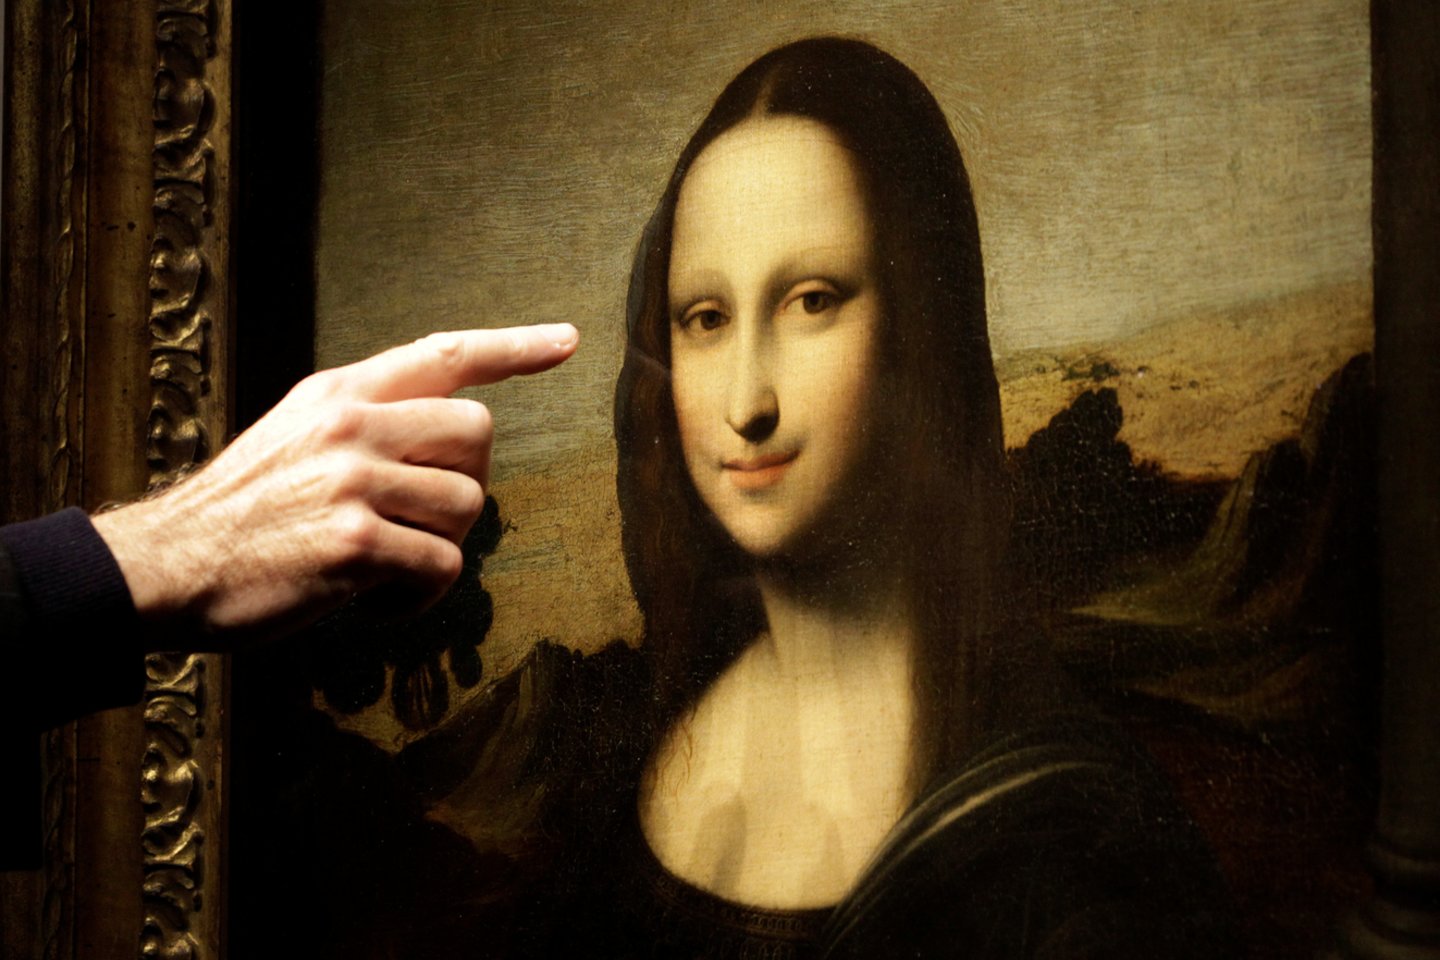  Vienas garsiausių pasaulyje tapybos šedevrų, Leonardo da Vinci sukurtas Monos Lisos portretas, bus perkeltas į kitą vietą, renovuojant šio paveikslo ekspozicijos salę Luvro muziejuje, penktadienį pranešė Paryžiaus muziejus.<br> Reuters/Scanpix nuotr.